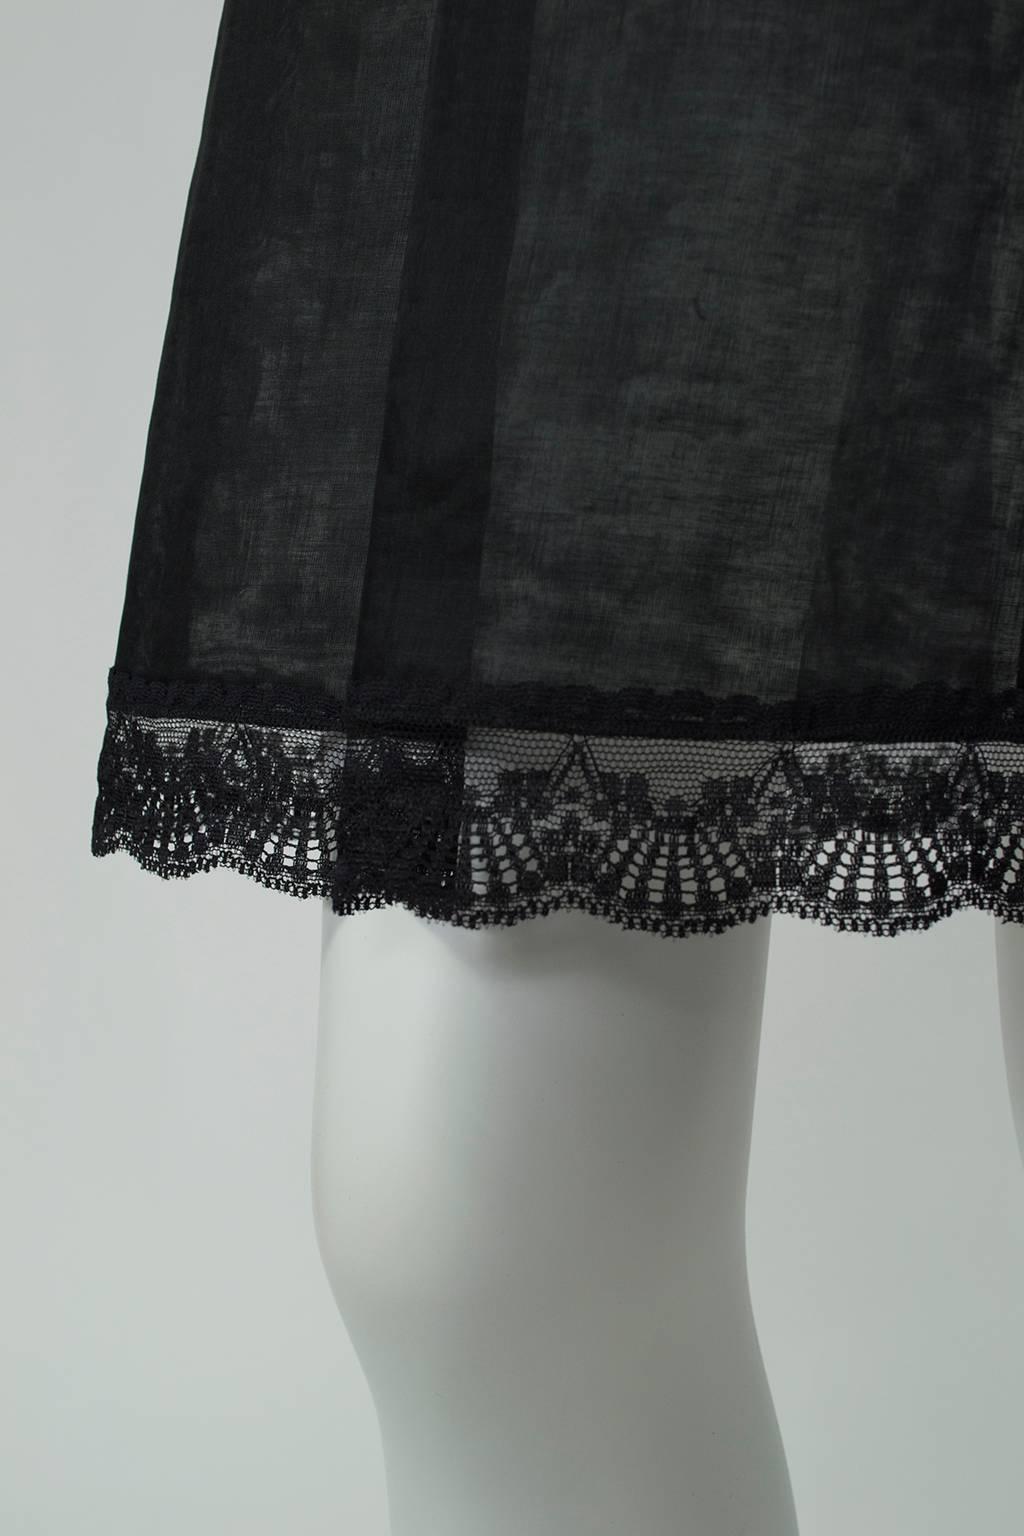 New Jacques Fath Paris Sheer Black Demi-Couture Linen Lingerie Skirt - M, 1990s For Sale 1